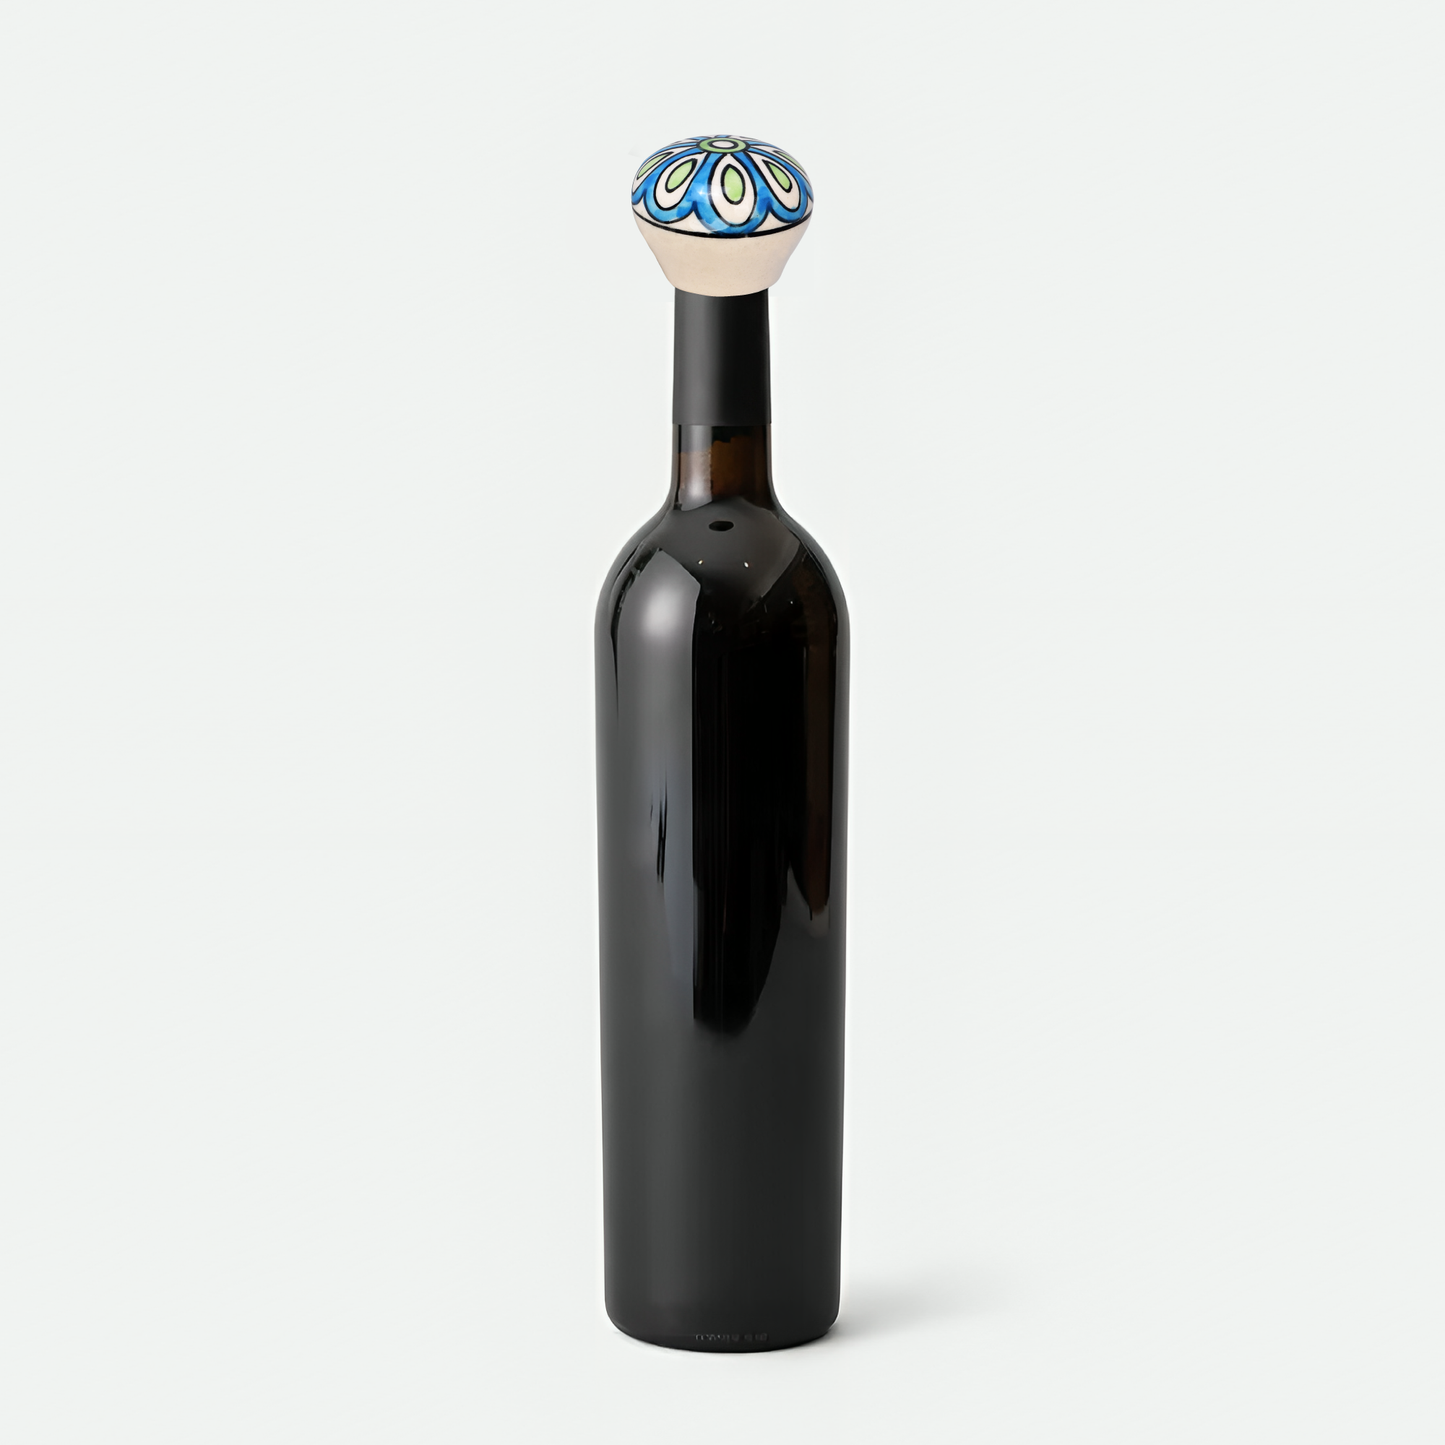 Shining Flower Design Wine Bottle Stopper